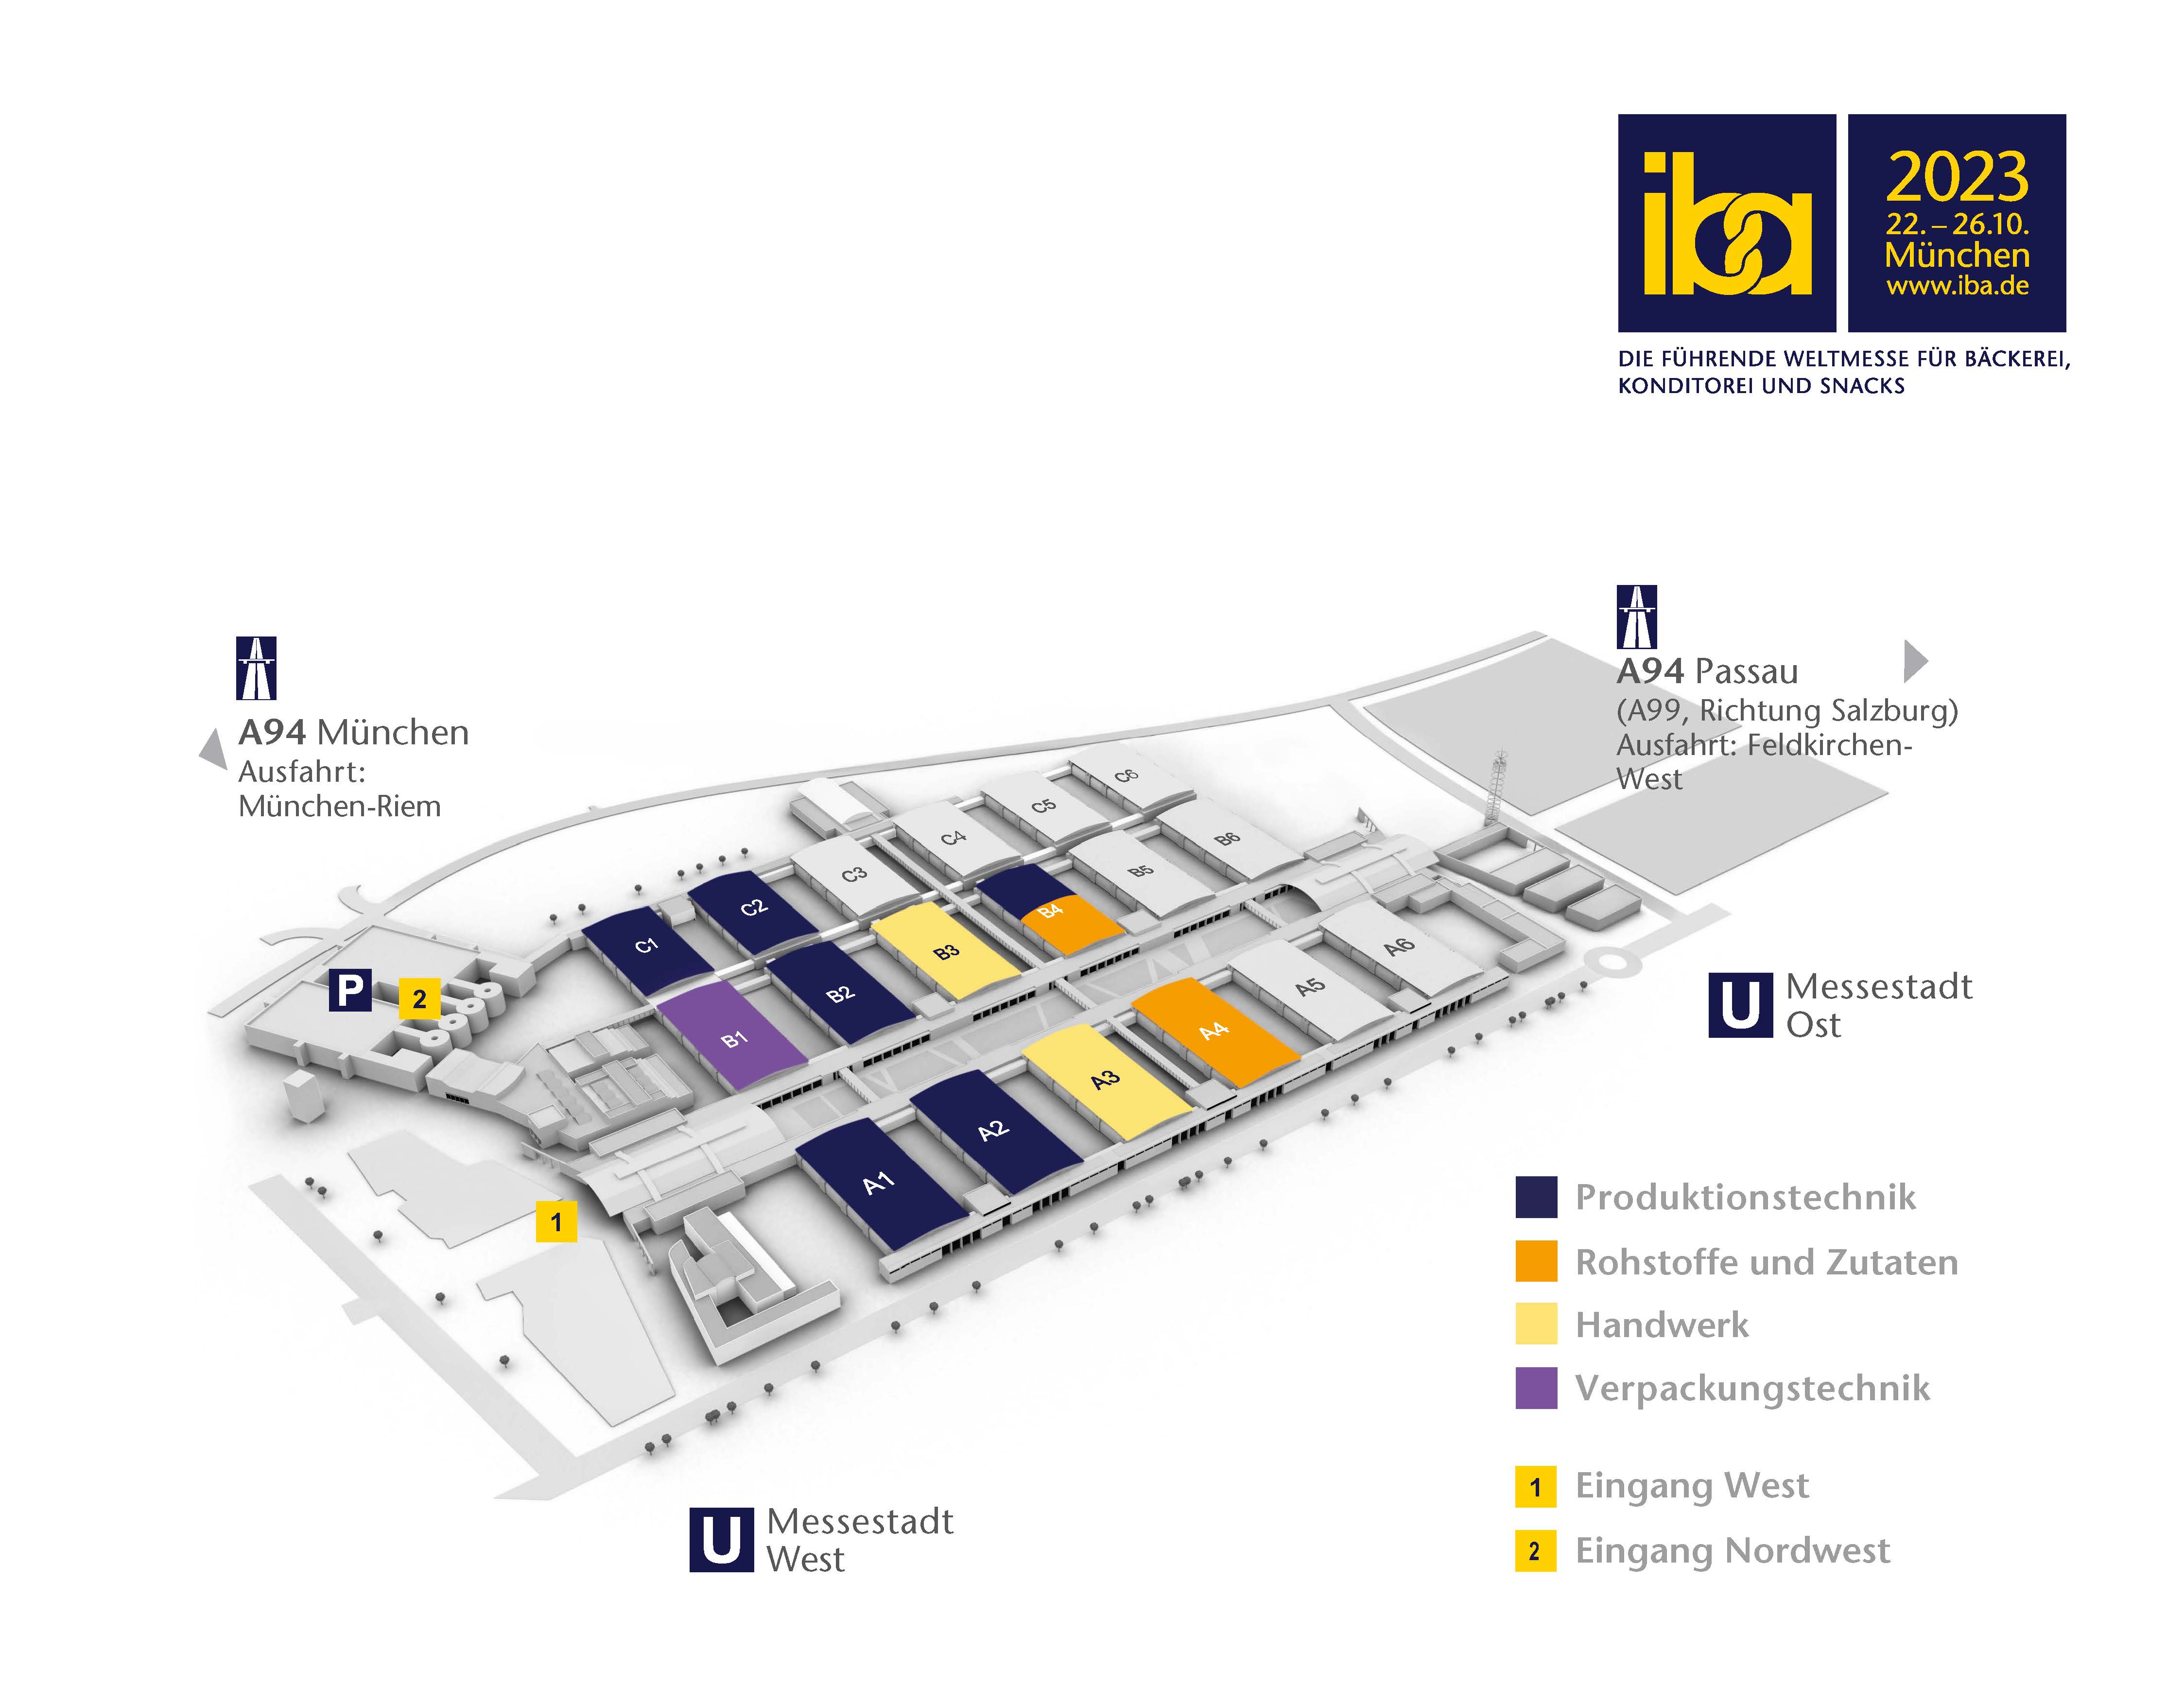 Geländeplan der iba 2023: Die Fachmesse verteilt sich auf insgesamt zehn Hallen. Foto: © GHM